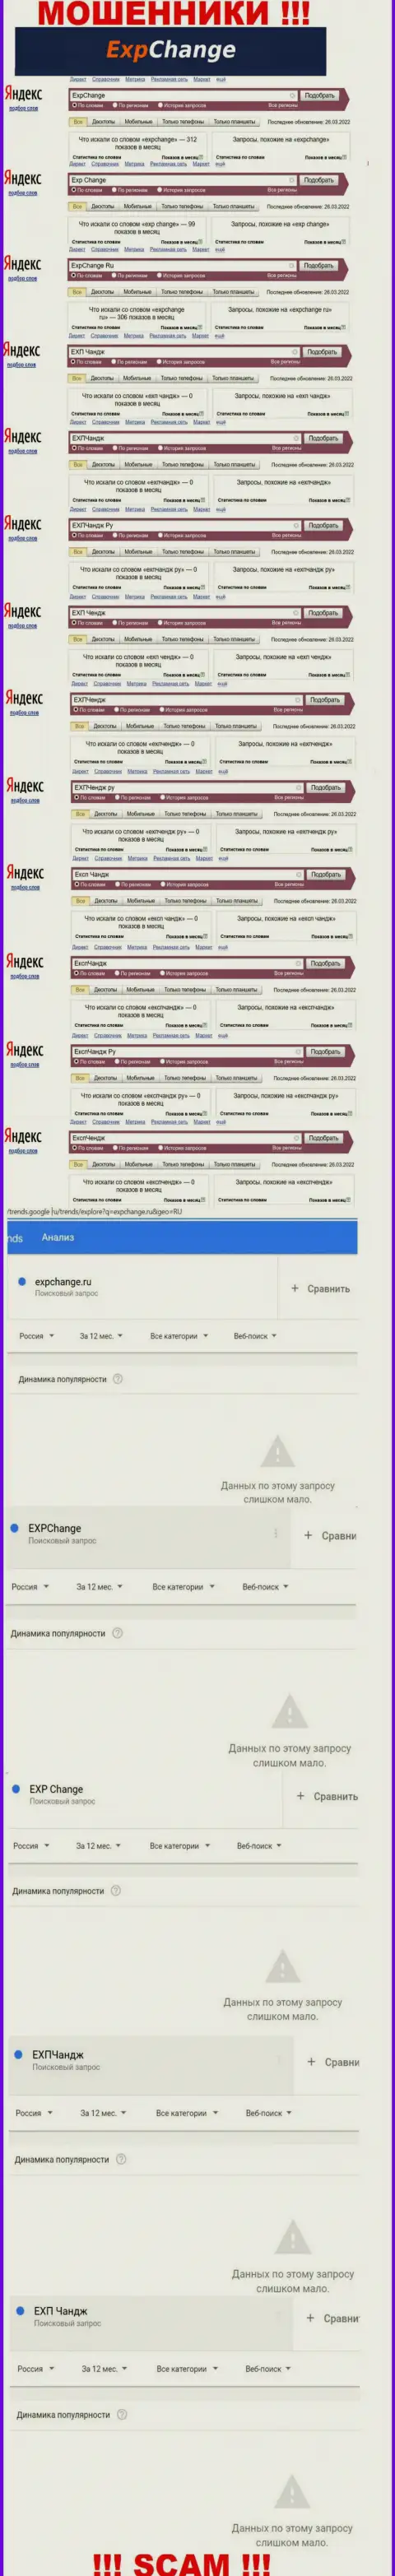 Суммарное число поисковых запросов посетителями инета инфы о мошенниках ExpChange Ru